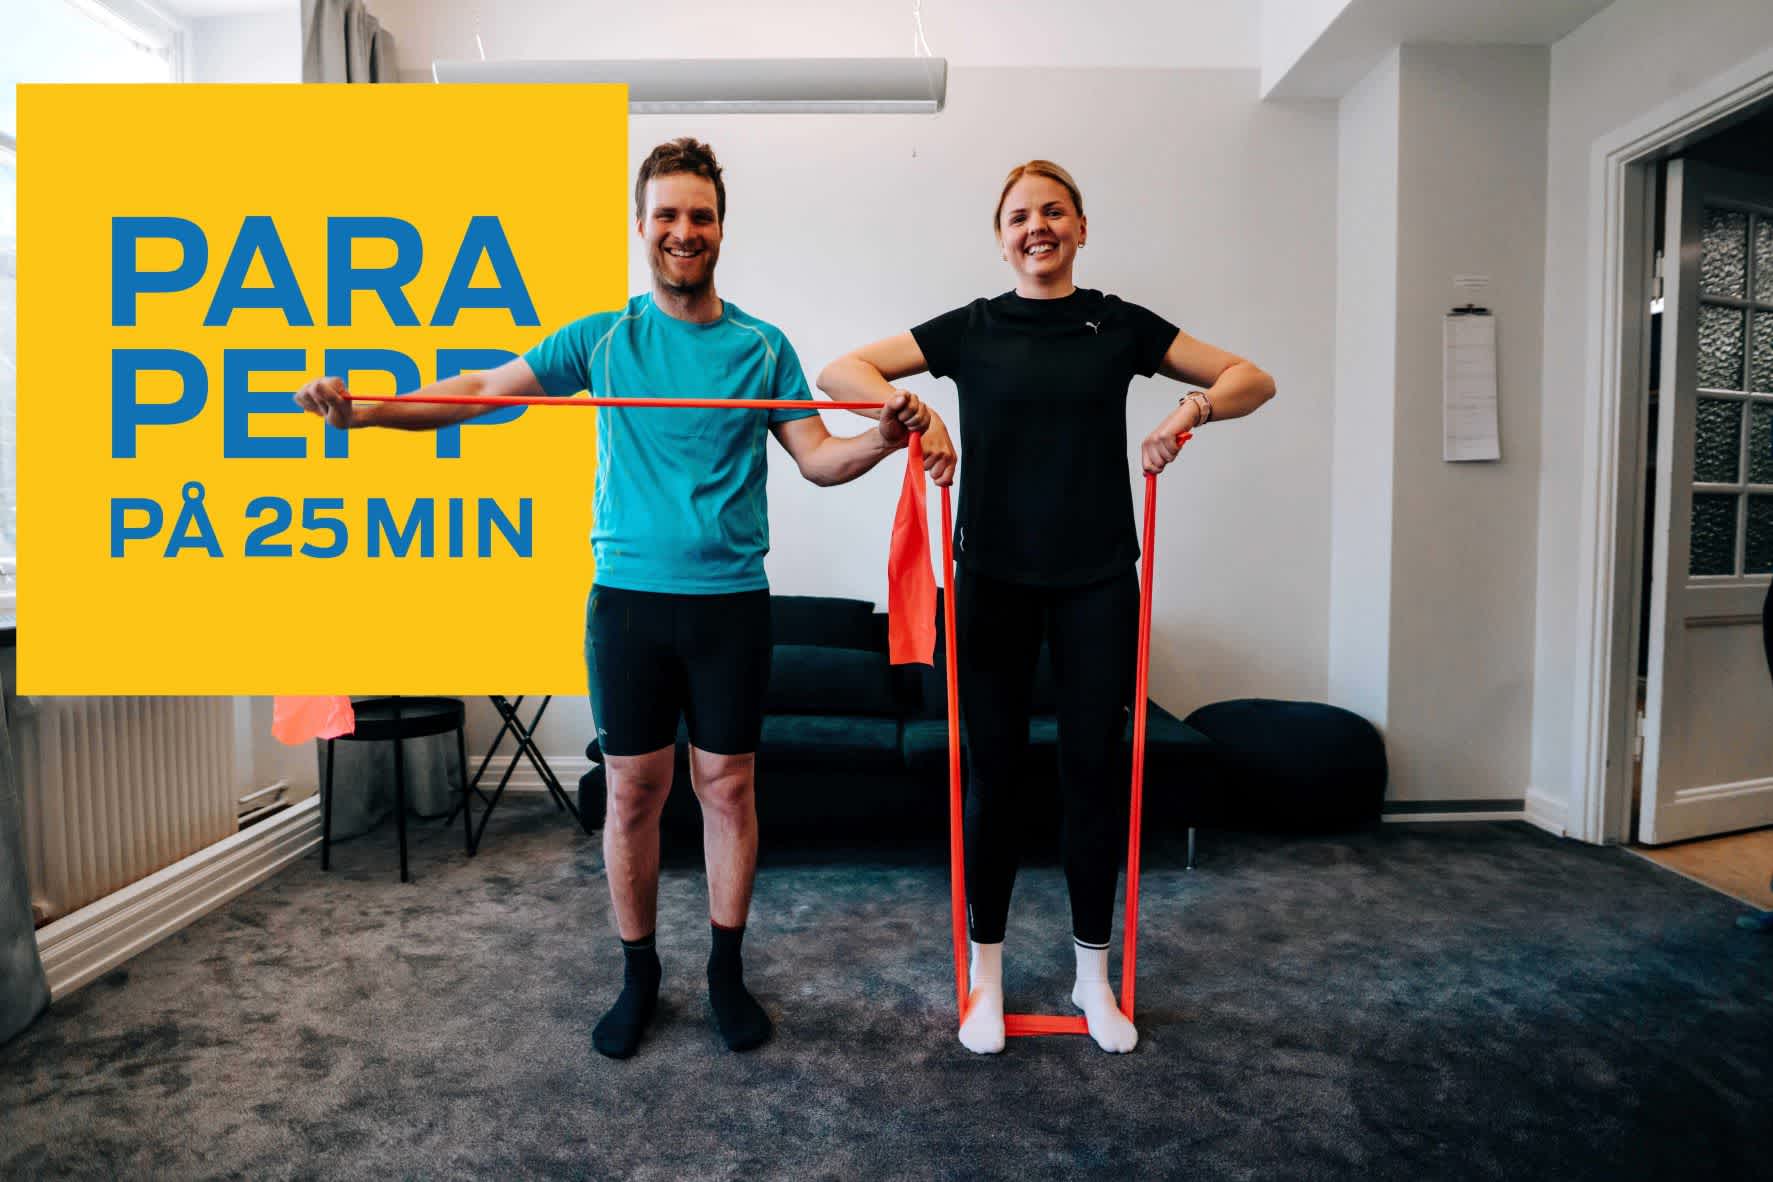 En man och en kvinna står bredvid varandra och utför olika övningar med gummiband. Till vänster, en gul ruta med blå text där det står Parapepp på 25 minuter.